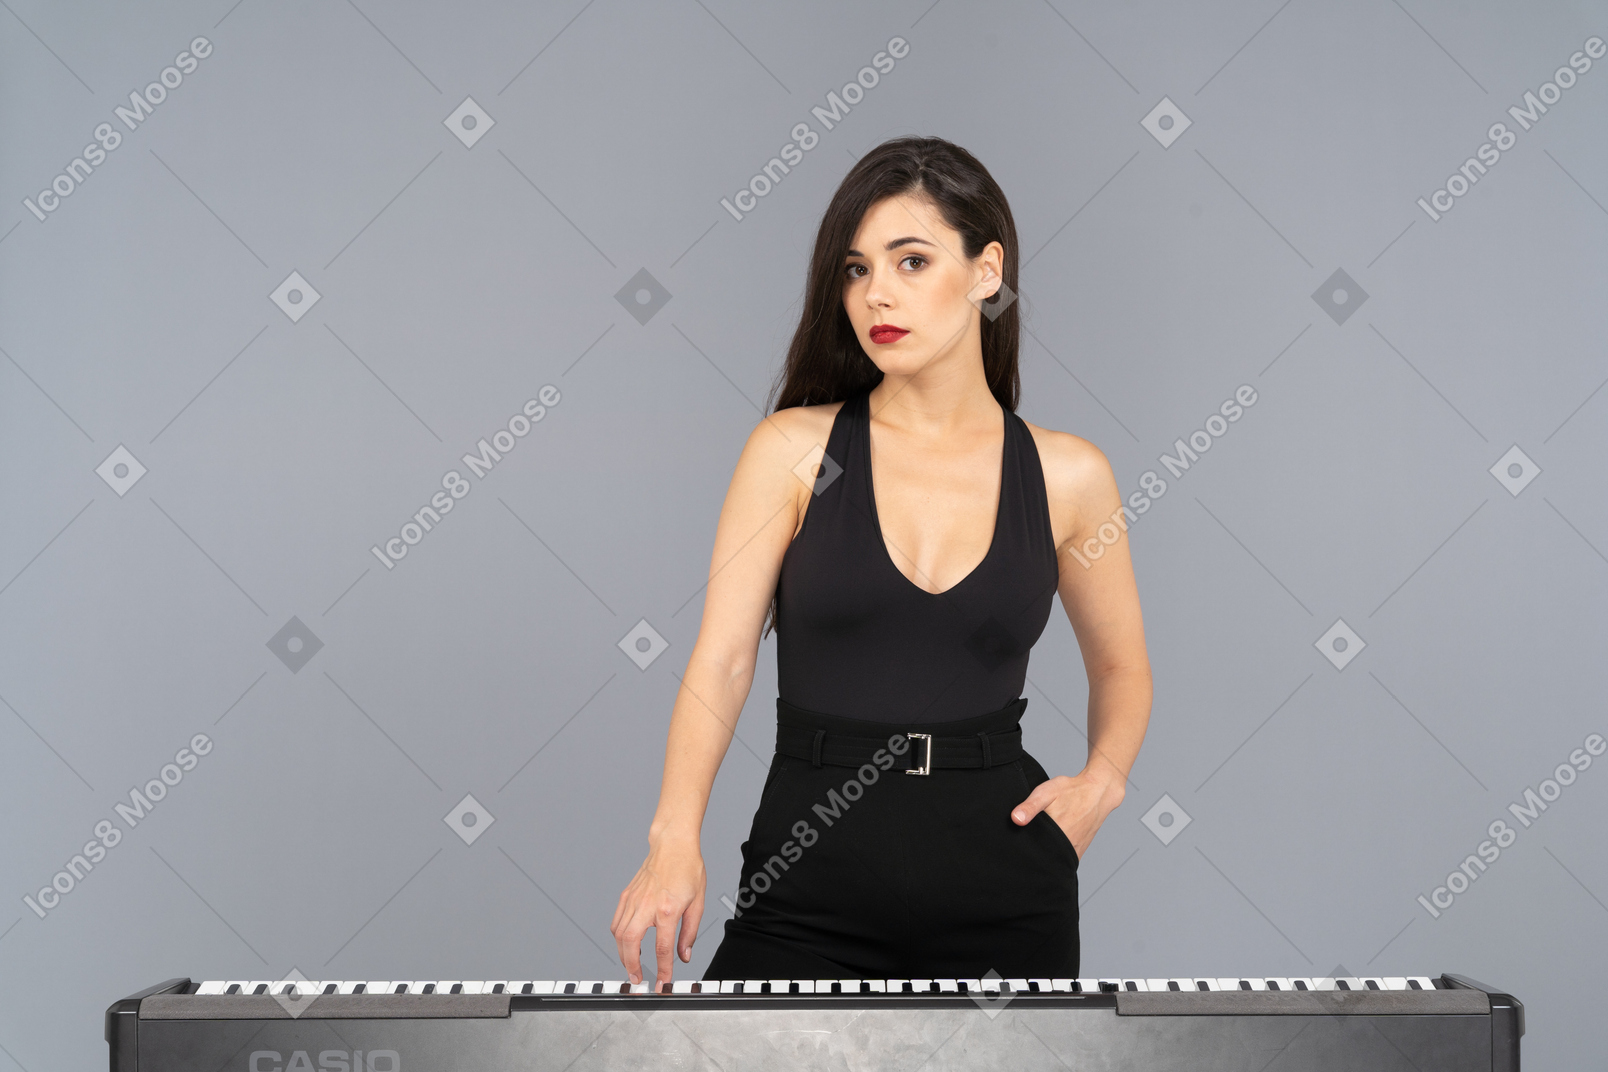 Vista frontal de uma jovem de vestido preto pressionando a tecla de um piano